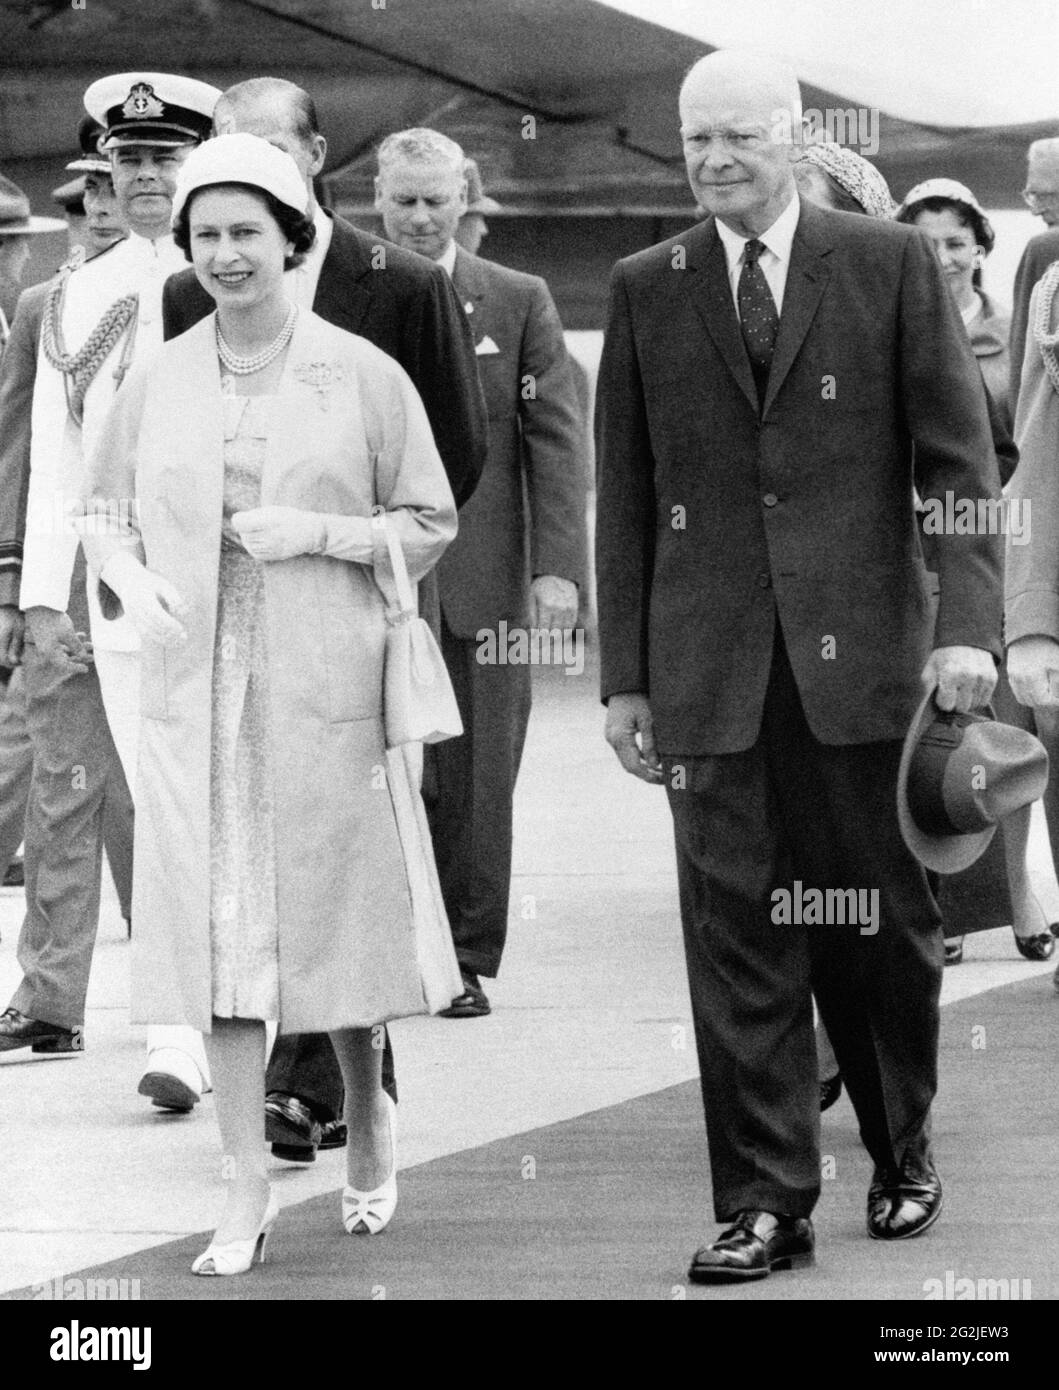 Photo du dossier datée du 29/06/59 de la reine Elizabeth II et du président américain de l'époque Dwight D. Eisenhower quittant la piste d'atterrissage à Saint-Hubert, au Québec, au Canada. Date de publication : samedi 12 juin 2021. Banque D'Images